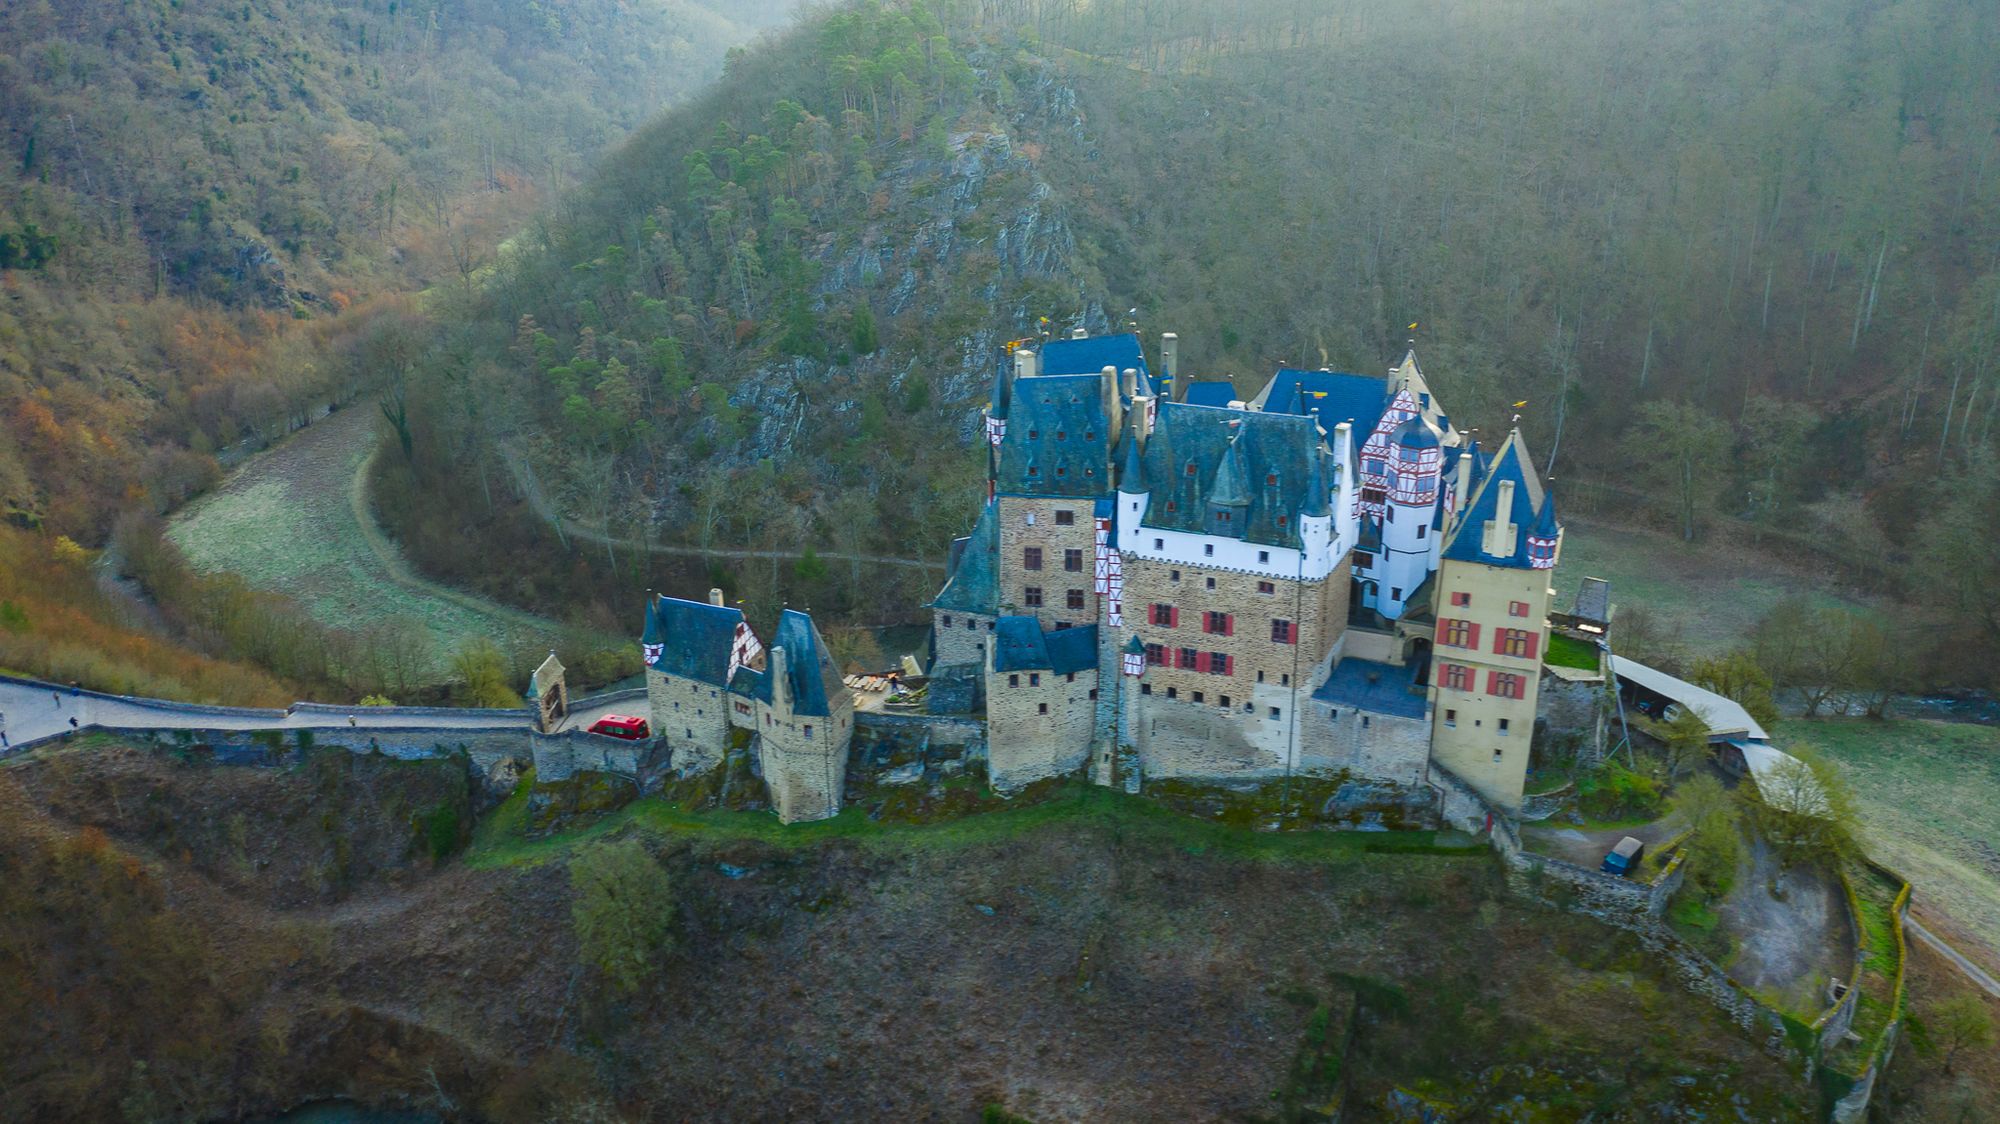 Burg Eltz - A Magical Castle